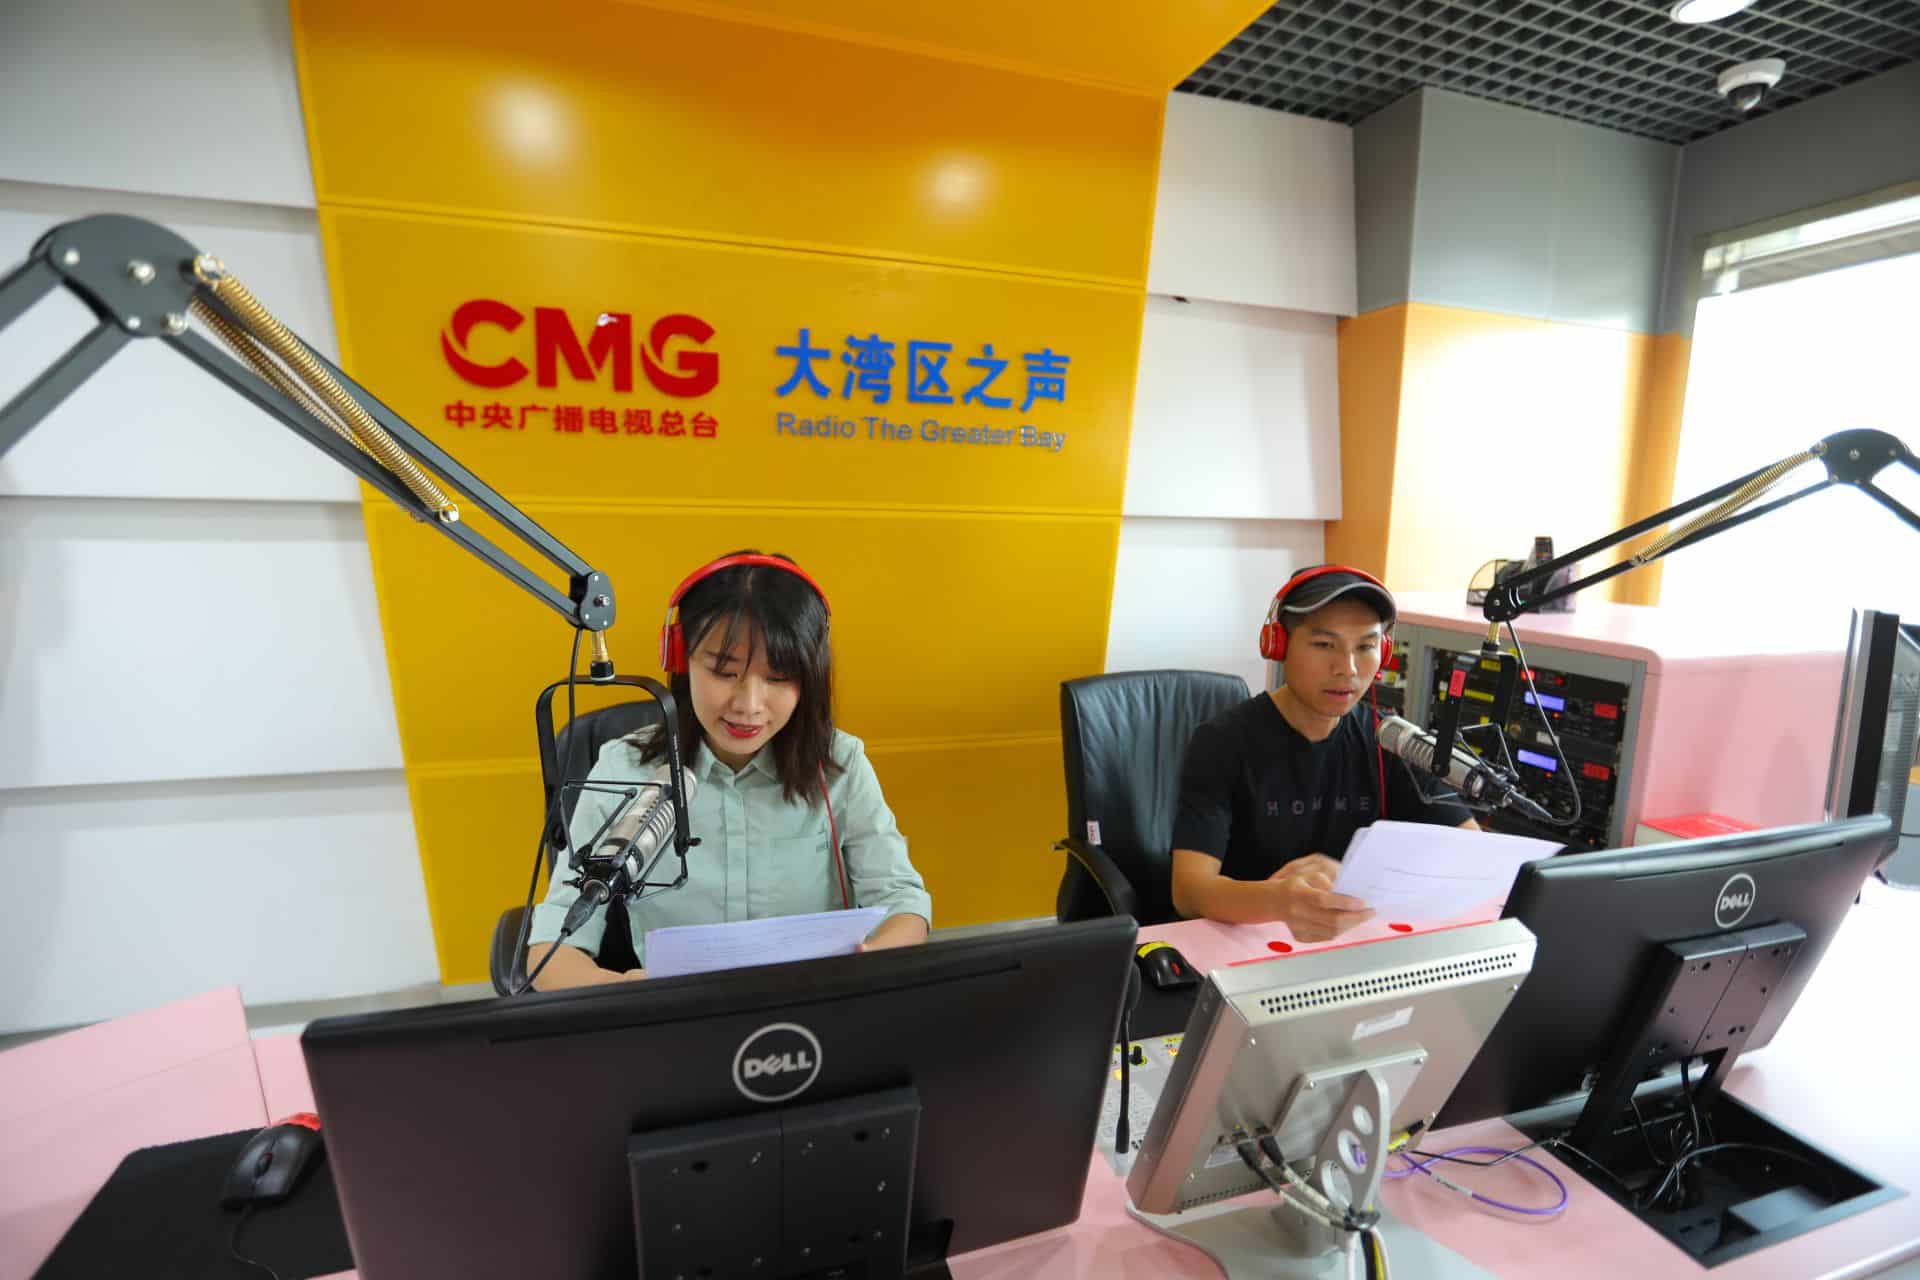 1 национальная радио. Радио Китая. Радиостанция Китай. Радиовещании Китая. Международное радио Китая.